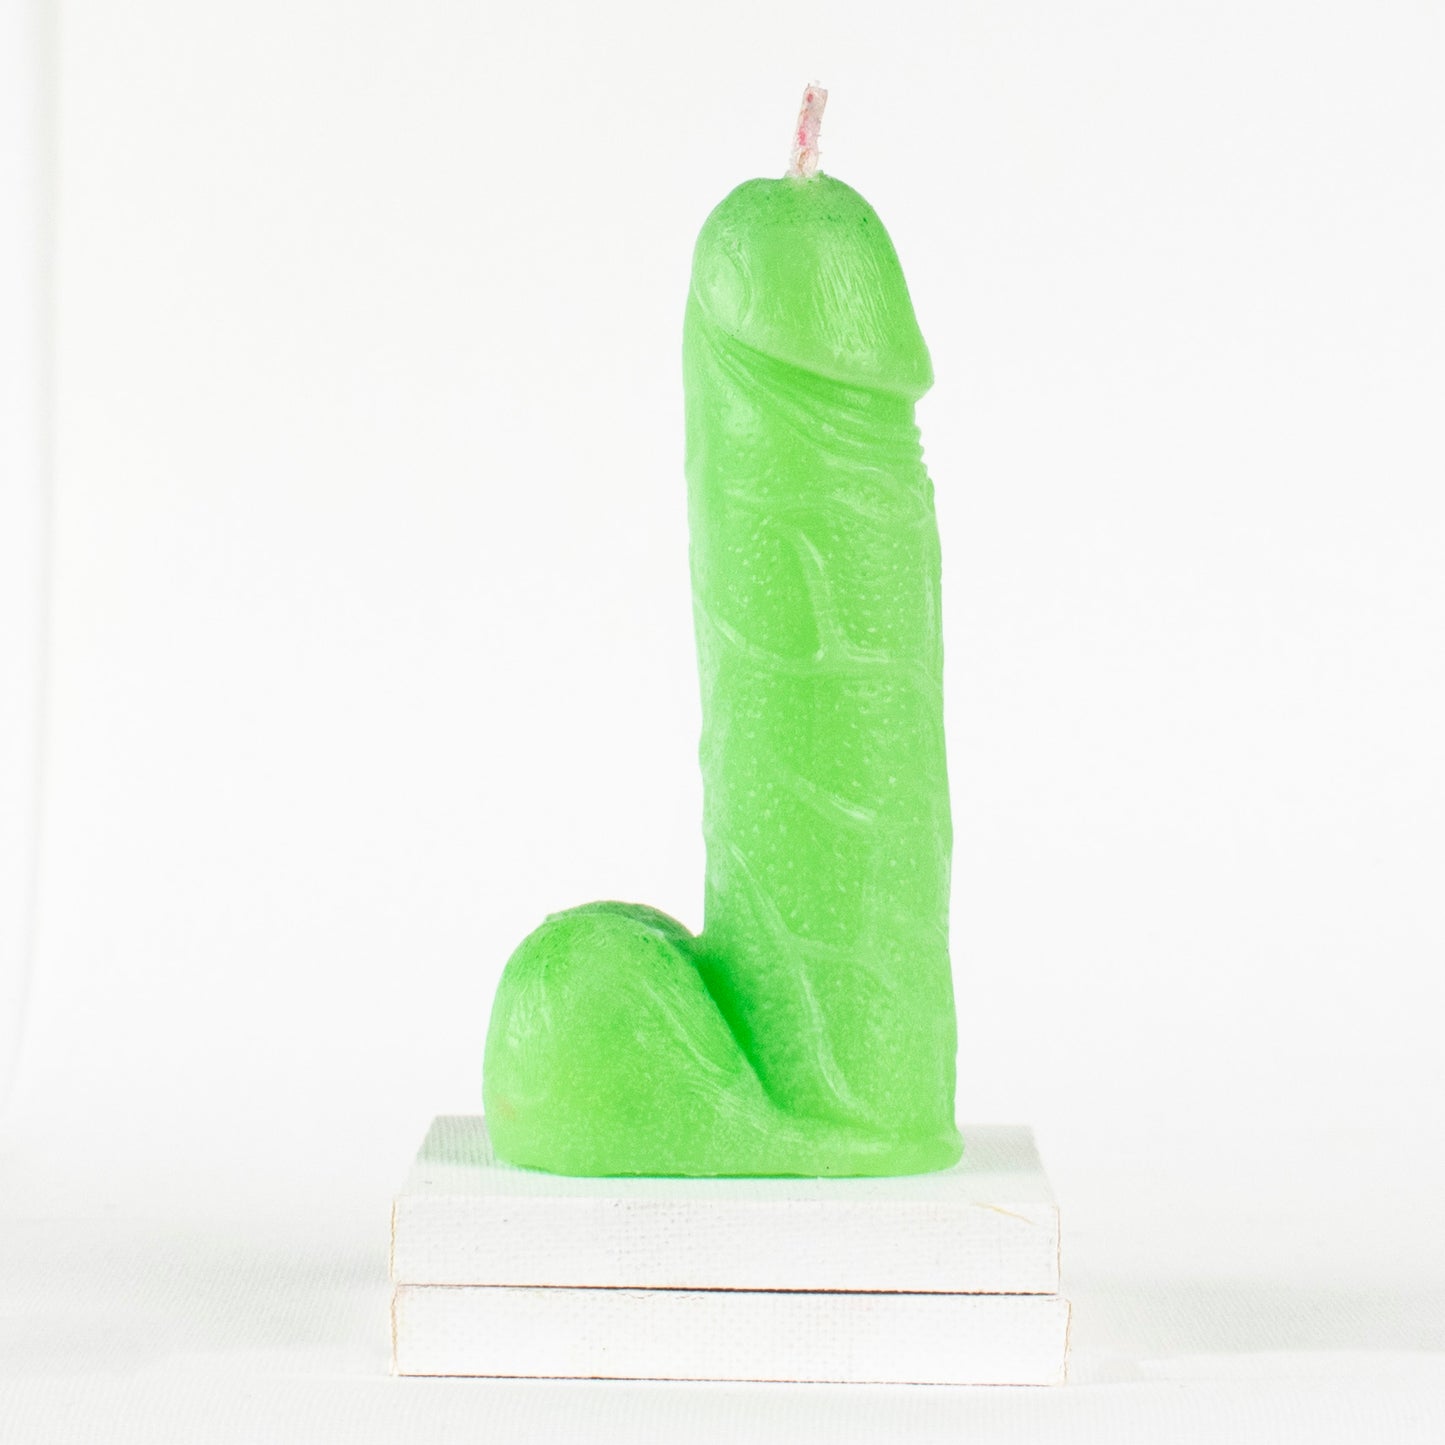 Alevli Sıcak Cinsel Organlar - Vulva ve Penis ağda mumları oynuyor